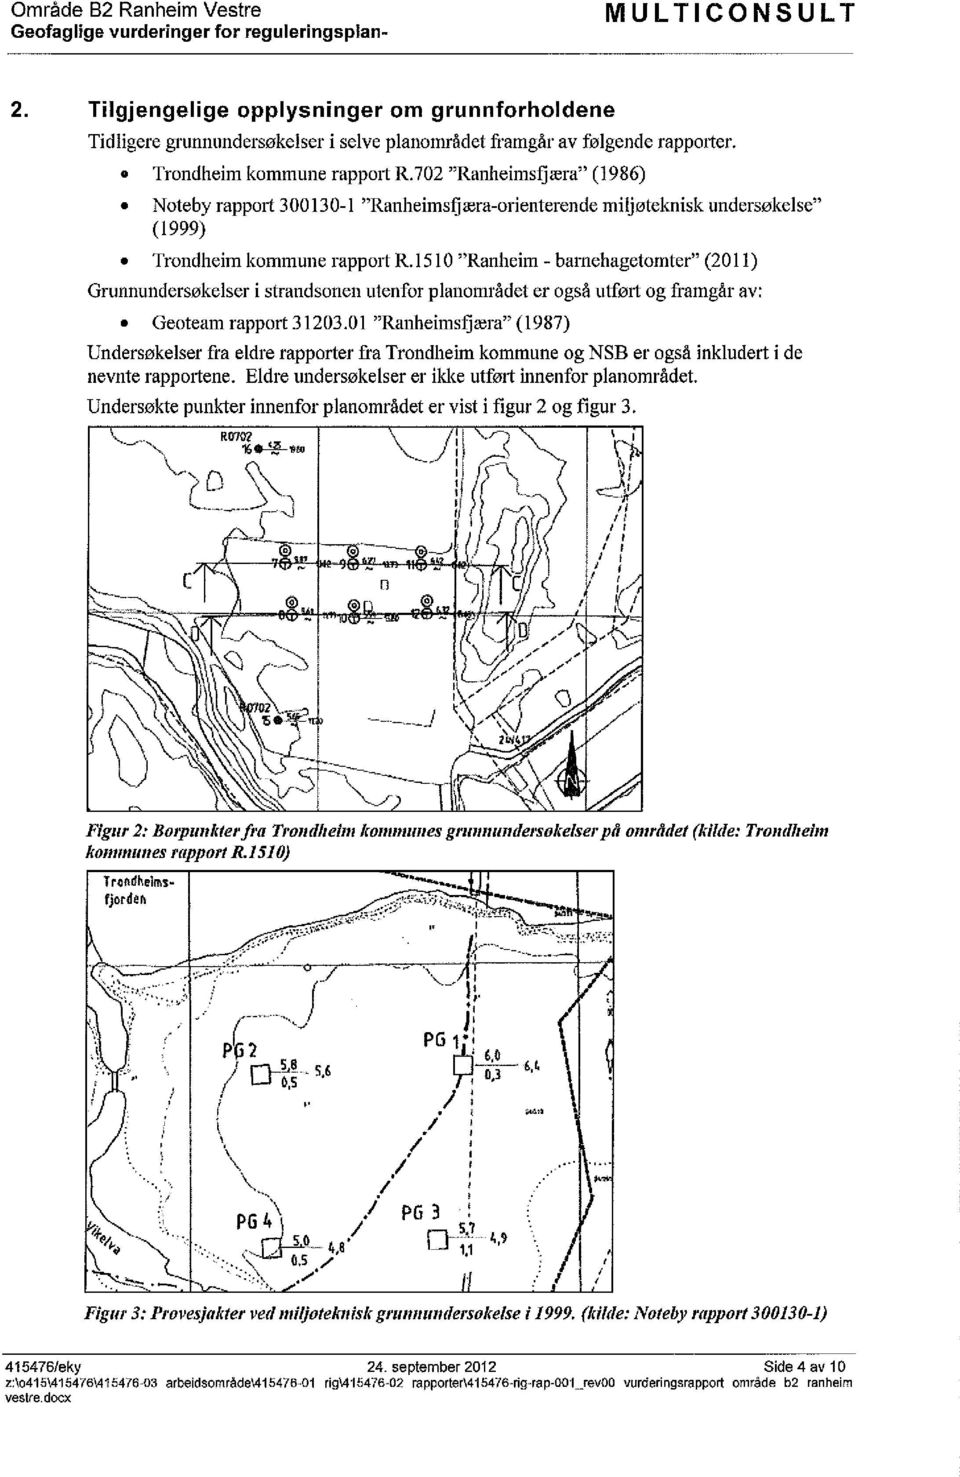 er også utført og framgår av: Geoteam rapport 3120301 "Ranheimsfjæra" (1987) Undersøkelser fra eldre rapporter fra Trondheim kommune og NSB er også inkludert i de nevnte rapportene Eldre